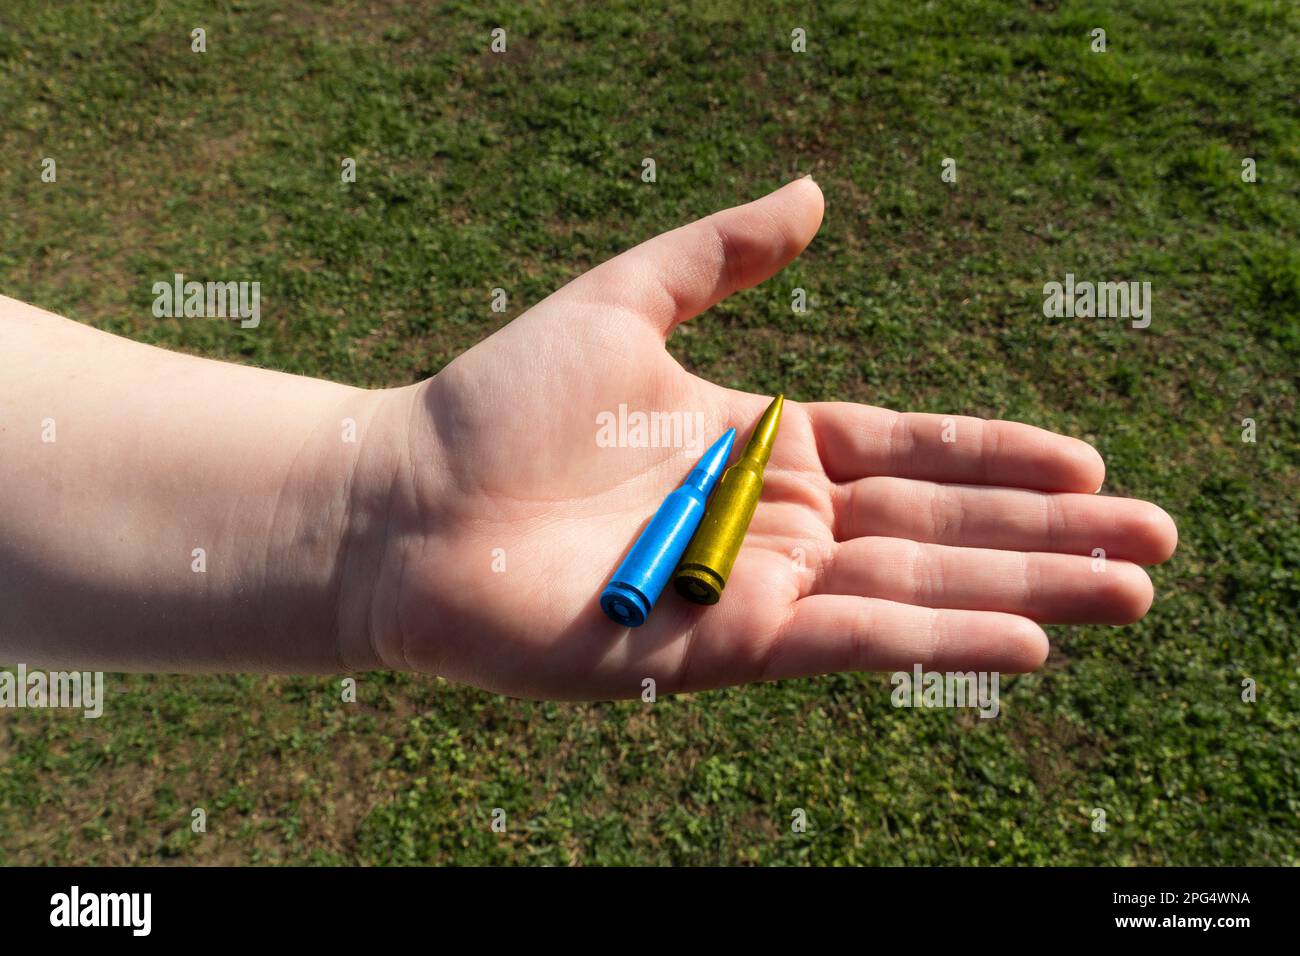 Gelbes und blaues Gewehrkartuschen in der Hand vor dem Hintergrund von grünem Gras (nationale Symbole der Ukraine). Konzept der militärischen Unterstützung für die Ukraine Stockfoto